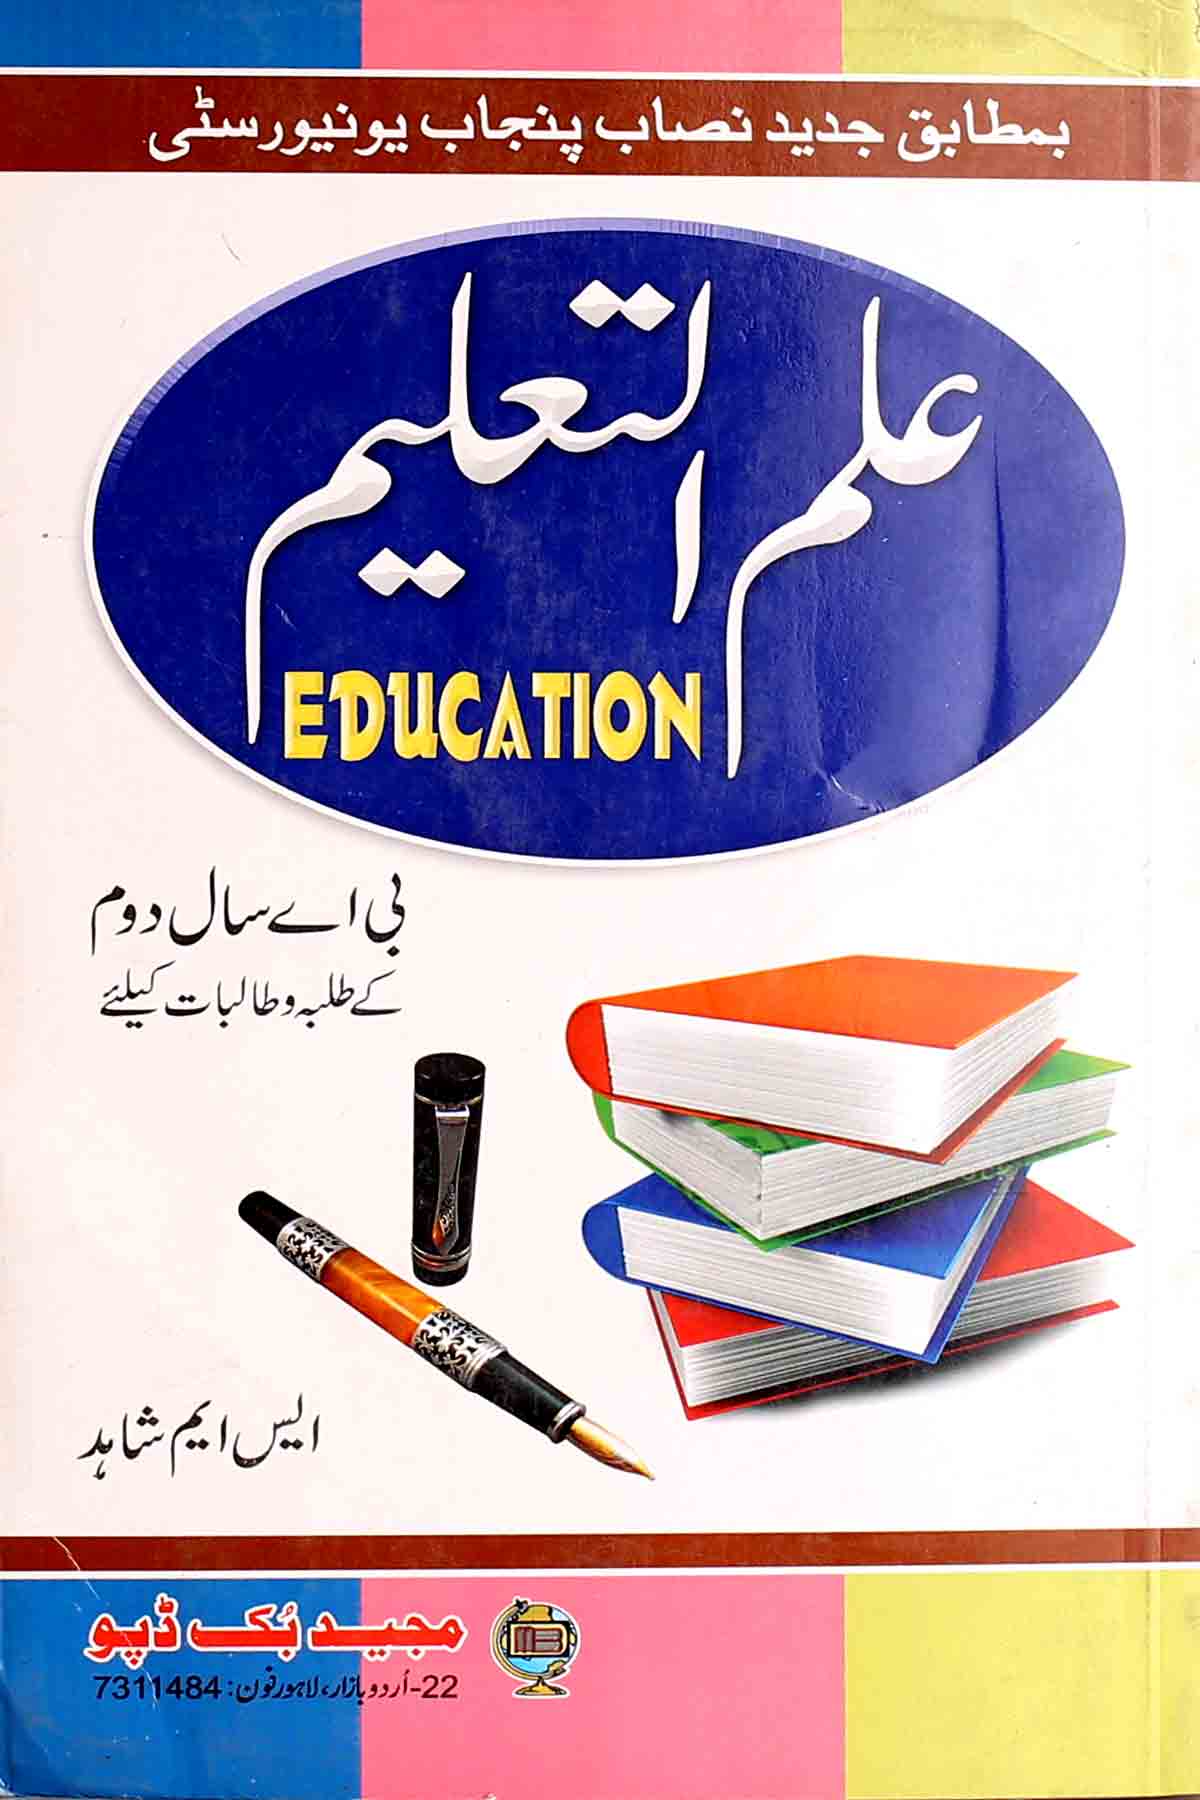 education articles in urdu